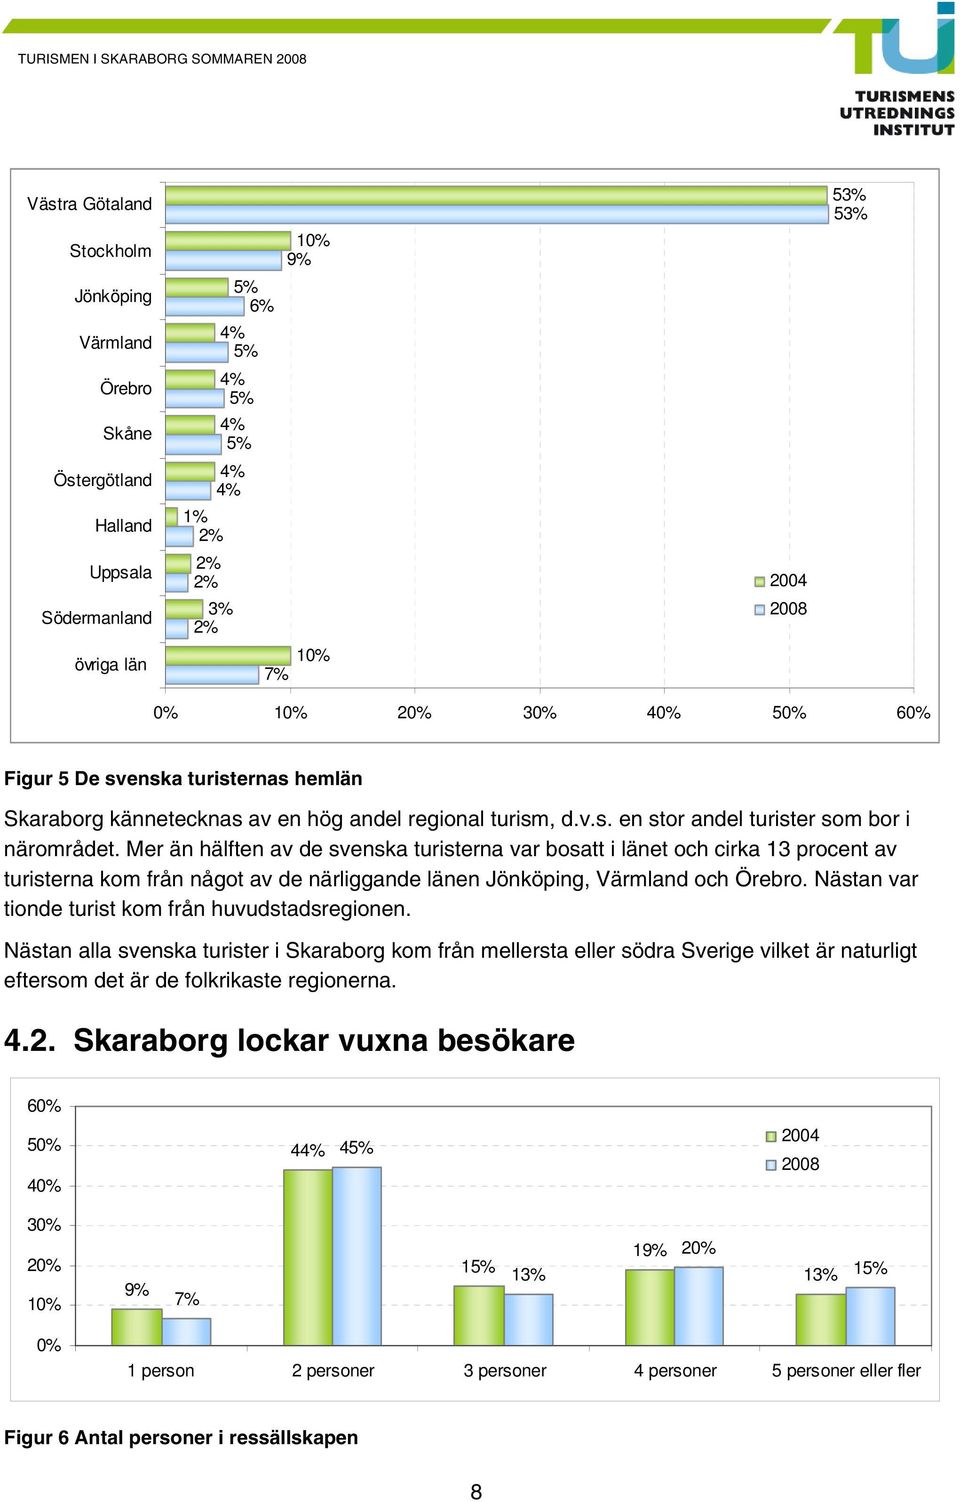 Mer än hälften av de svenska turisterna var bosatt i länet och cirka 13 procent av turisterna kom från något av de närliggande länen Jönköping, Värmland och Örebro.